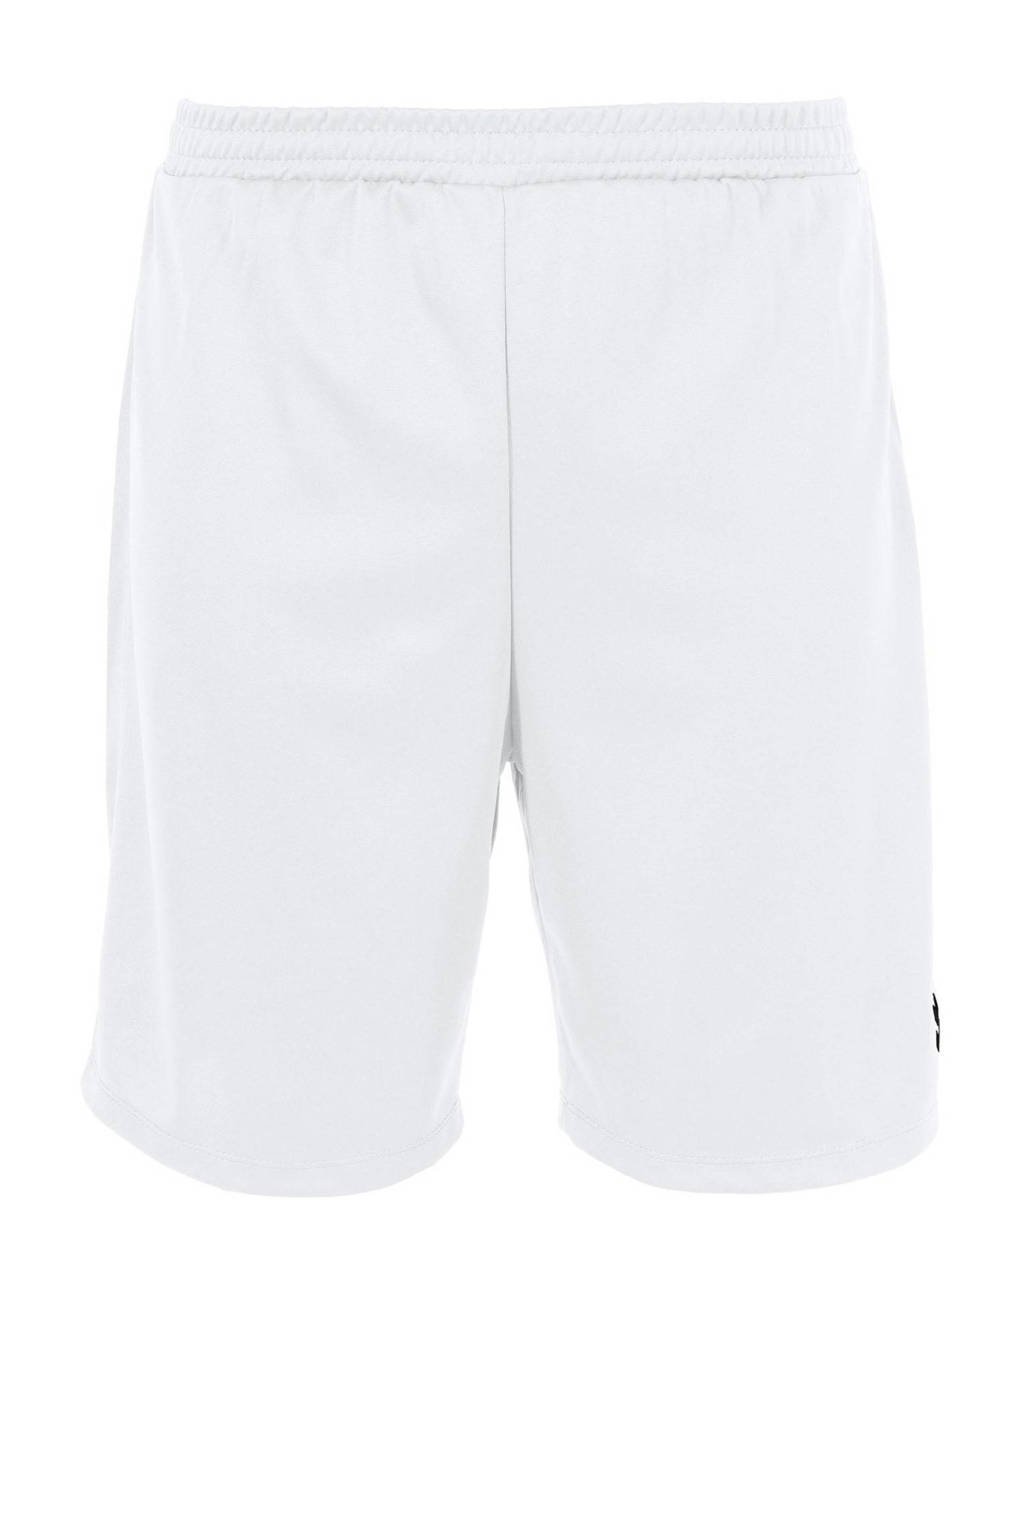 Witte heren hummel voetbalshort Euro van polyester met regular fit en elastische tailleband met koord